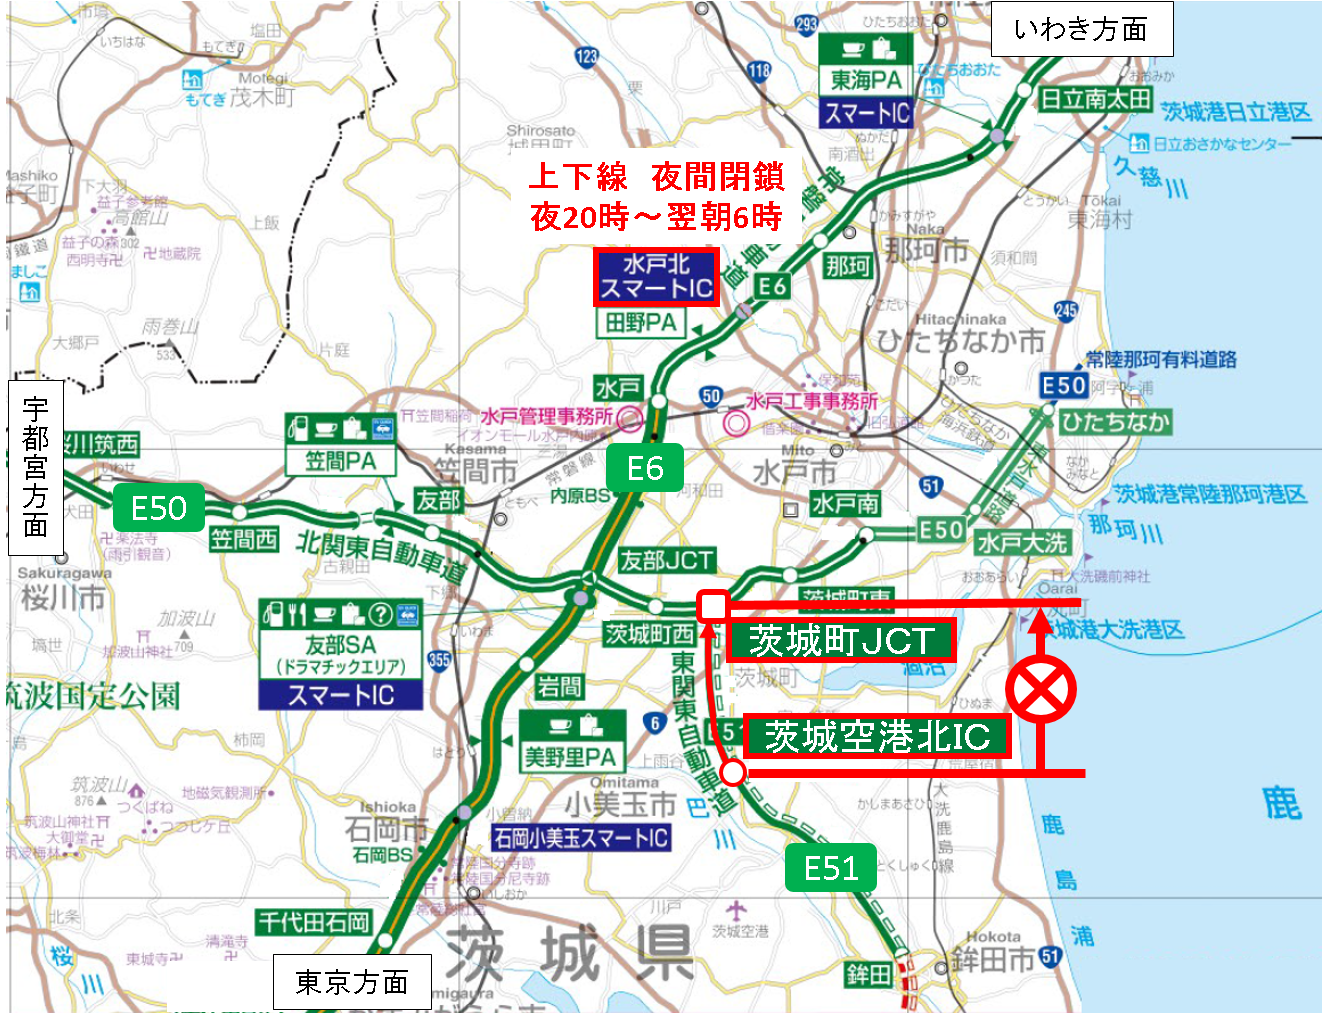 【修正】200626_東関道通行止め位置図.png